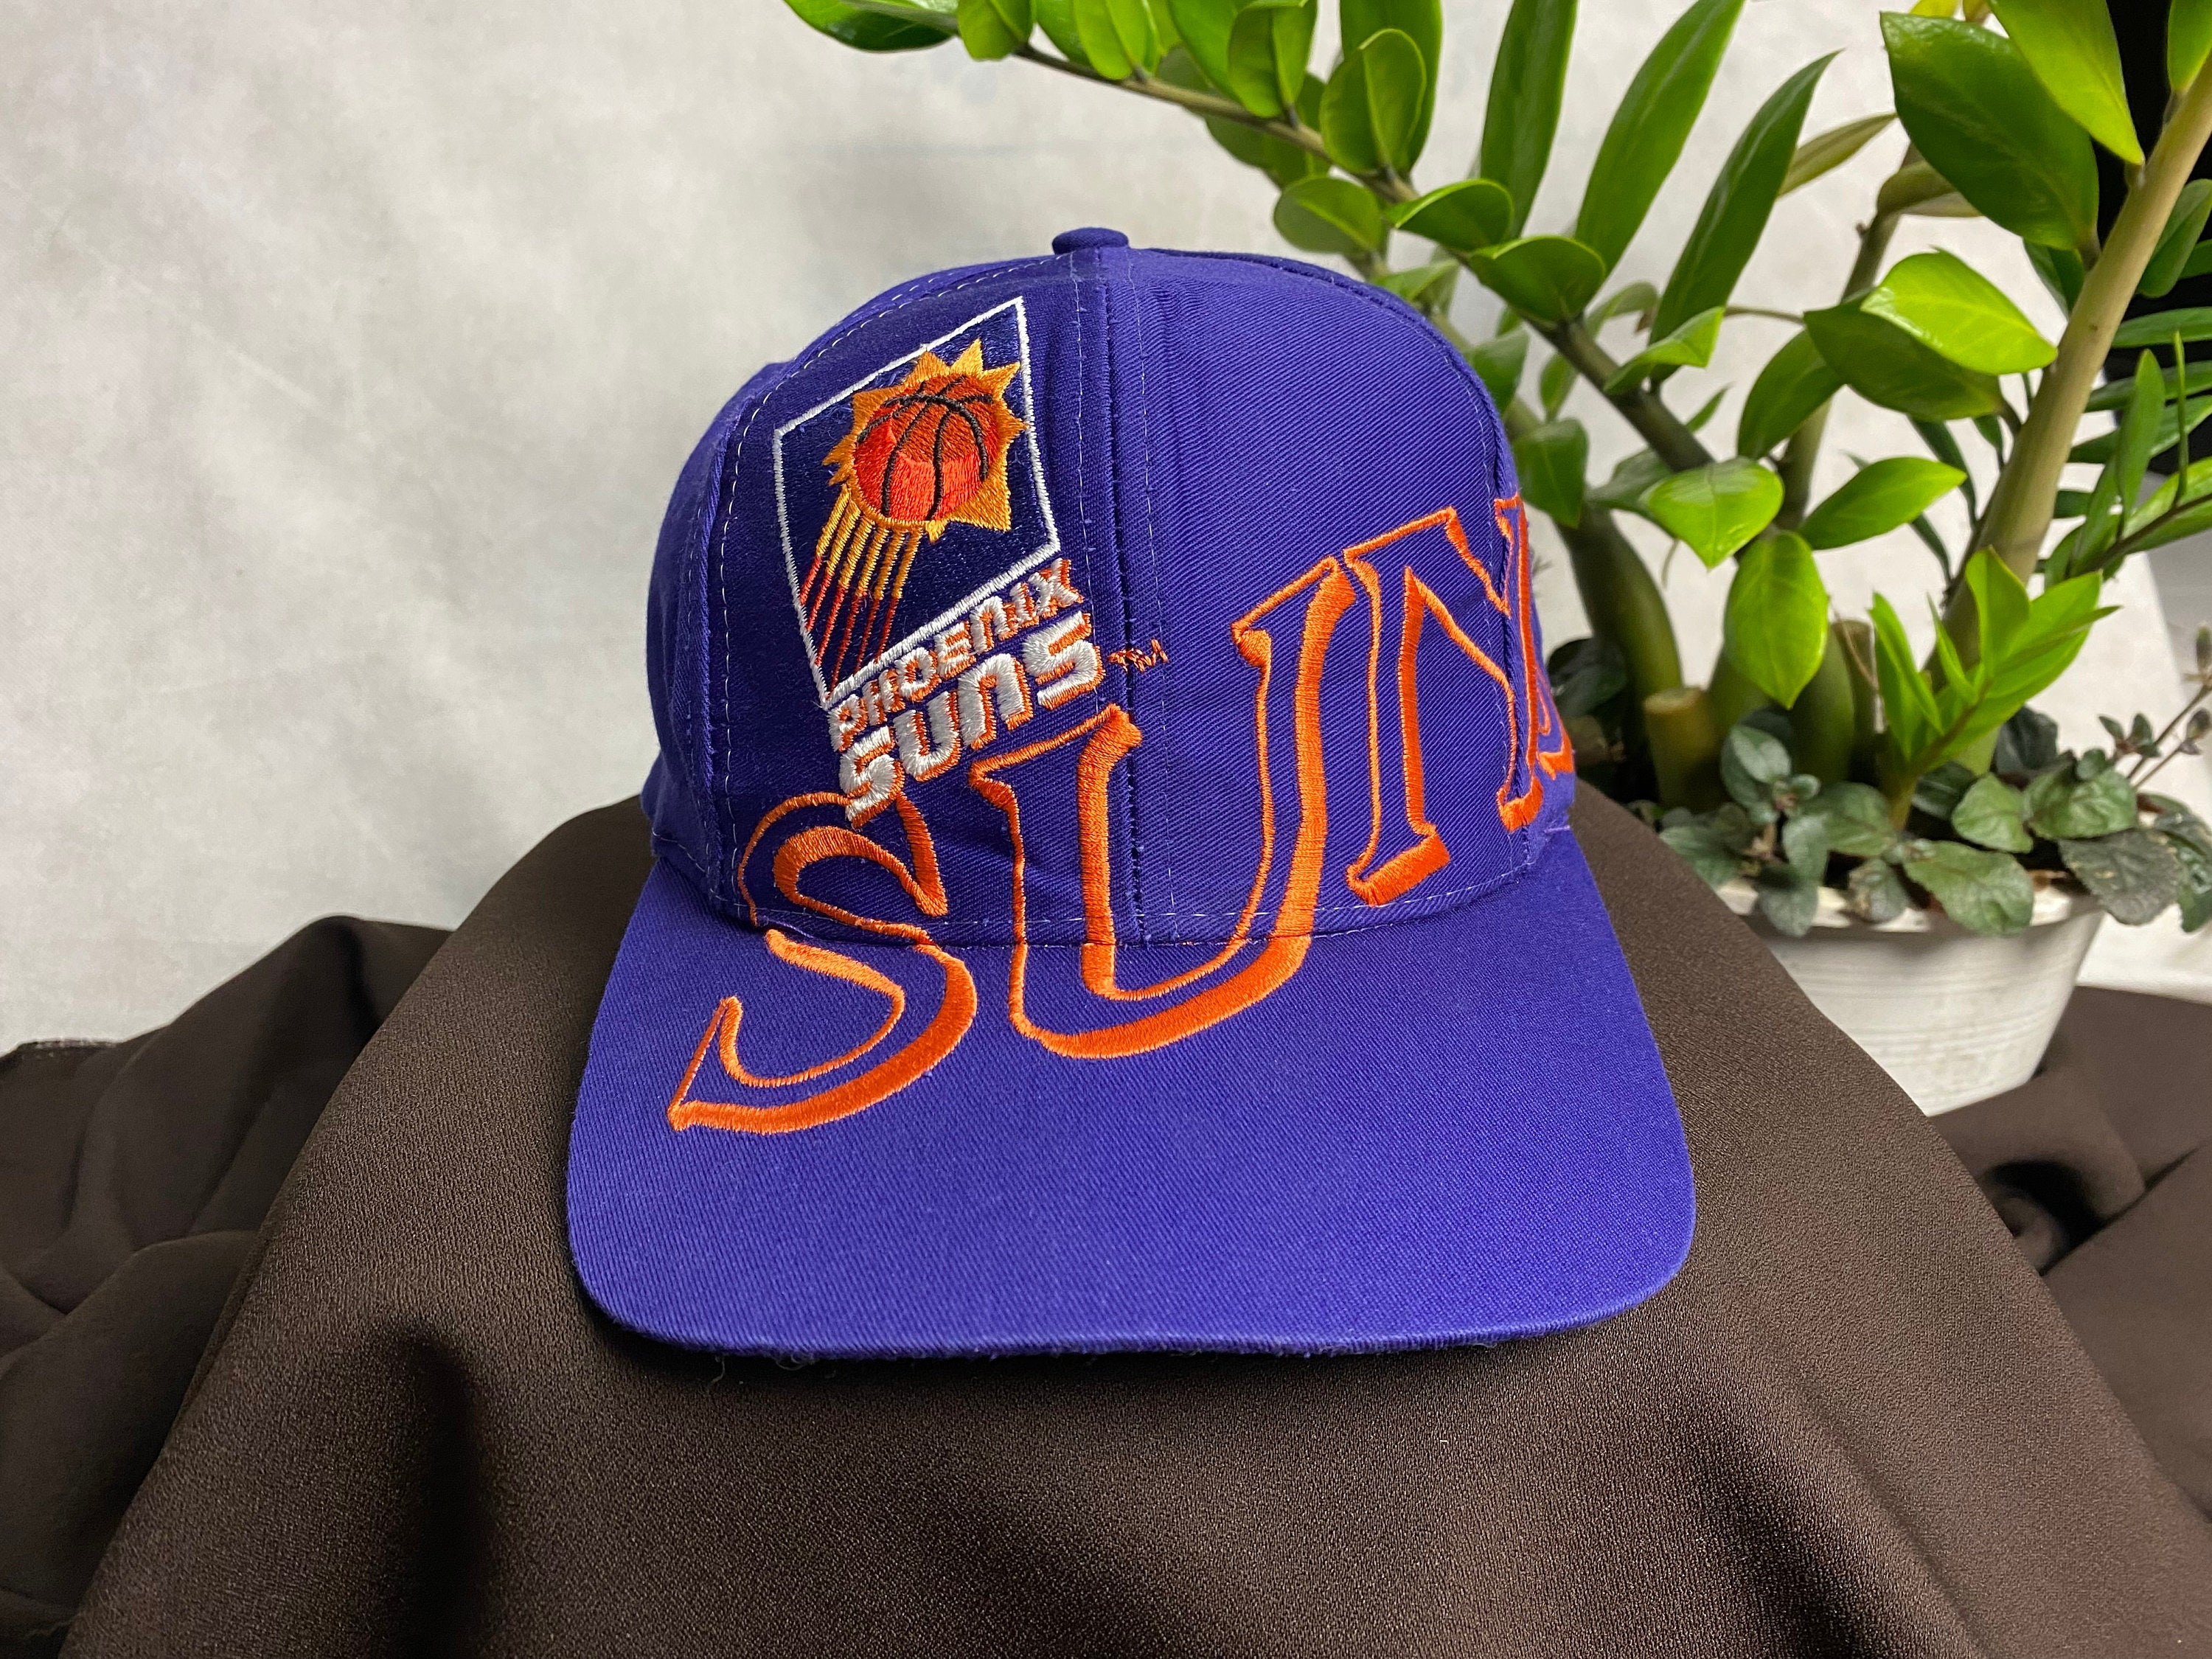 Vintage suns phoenix hat - Gem